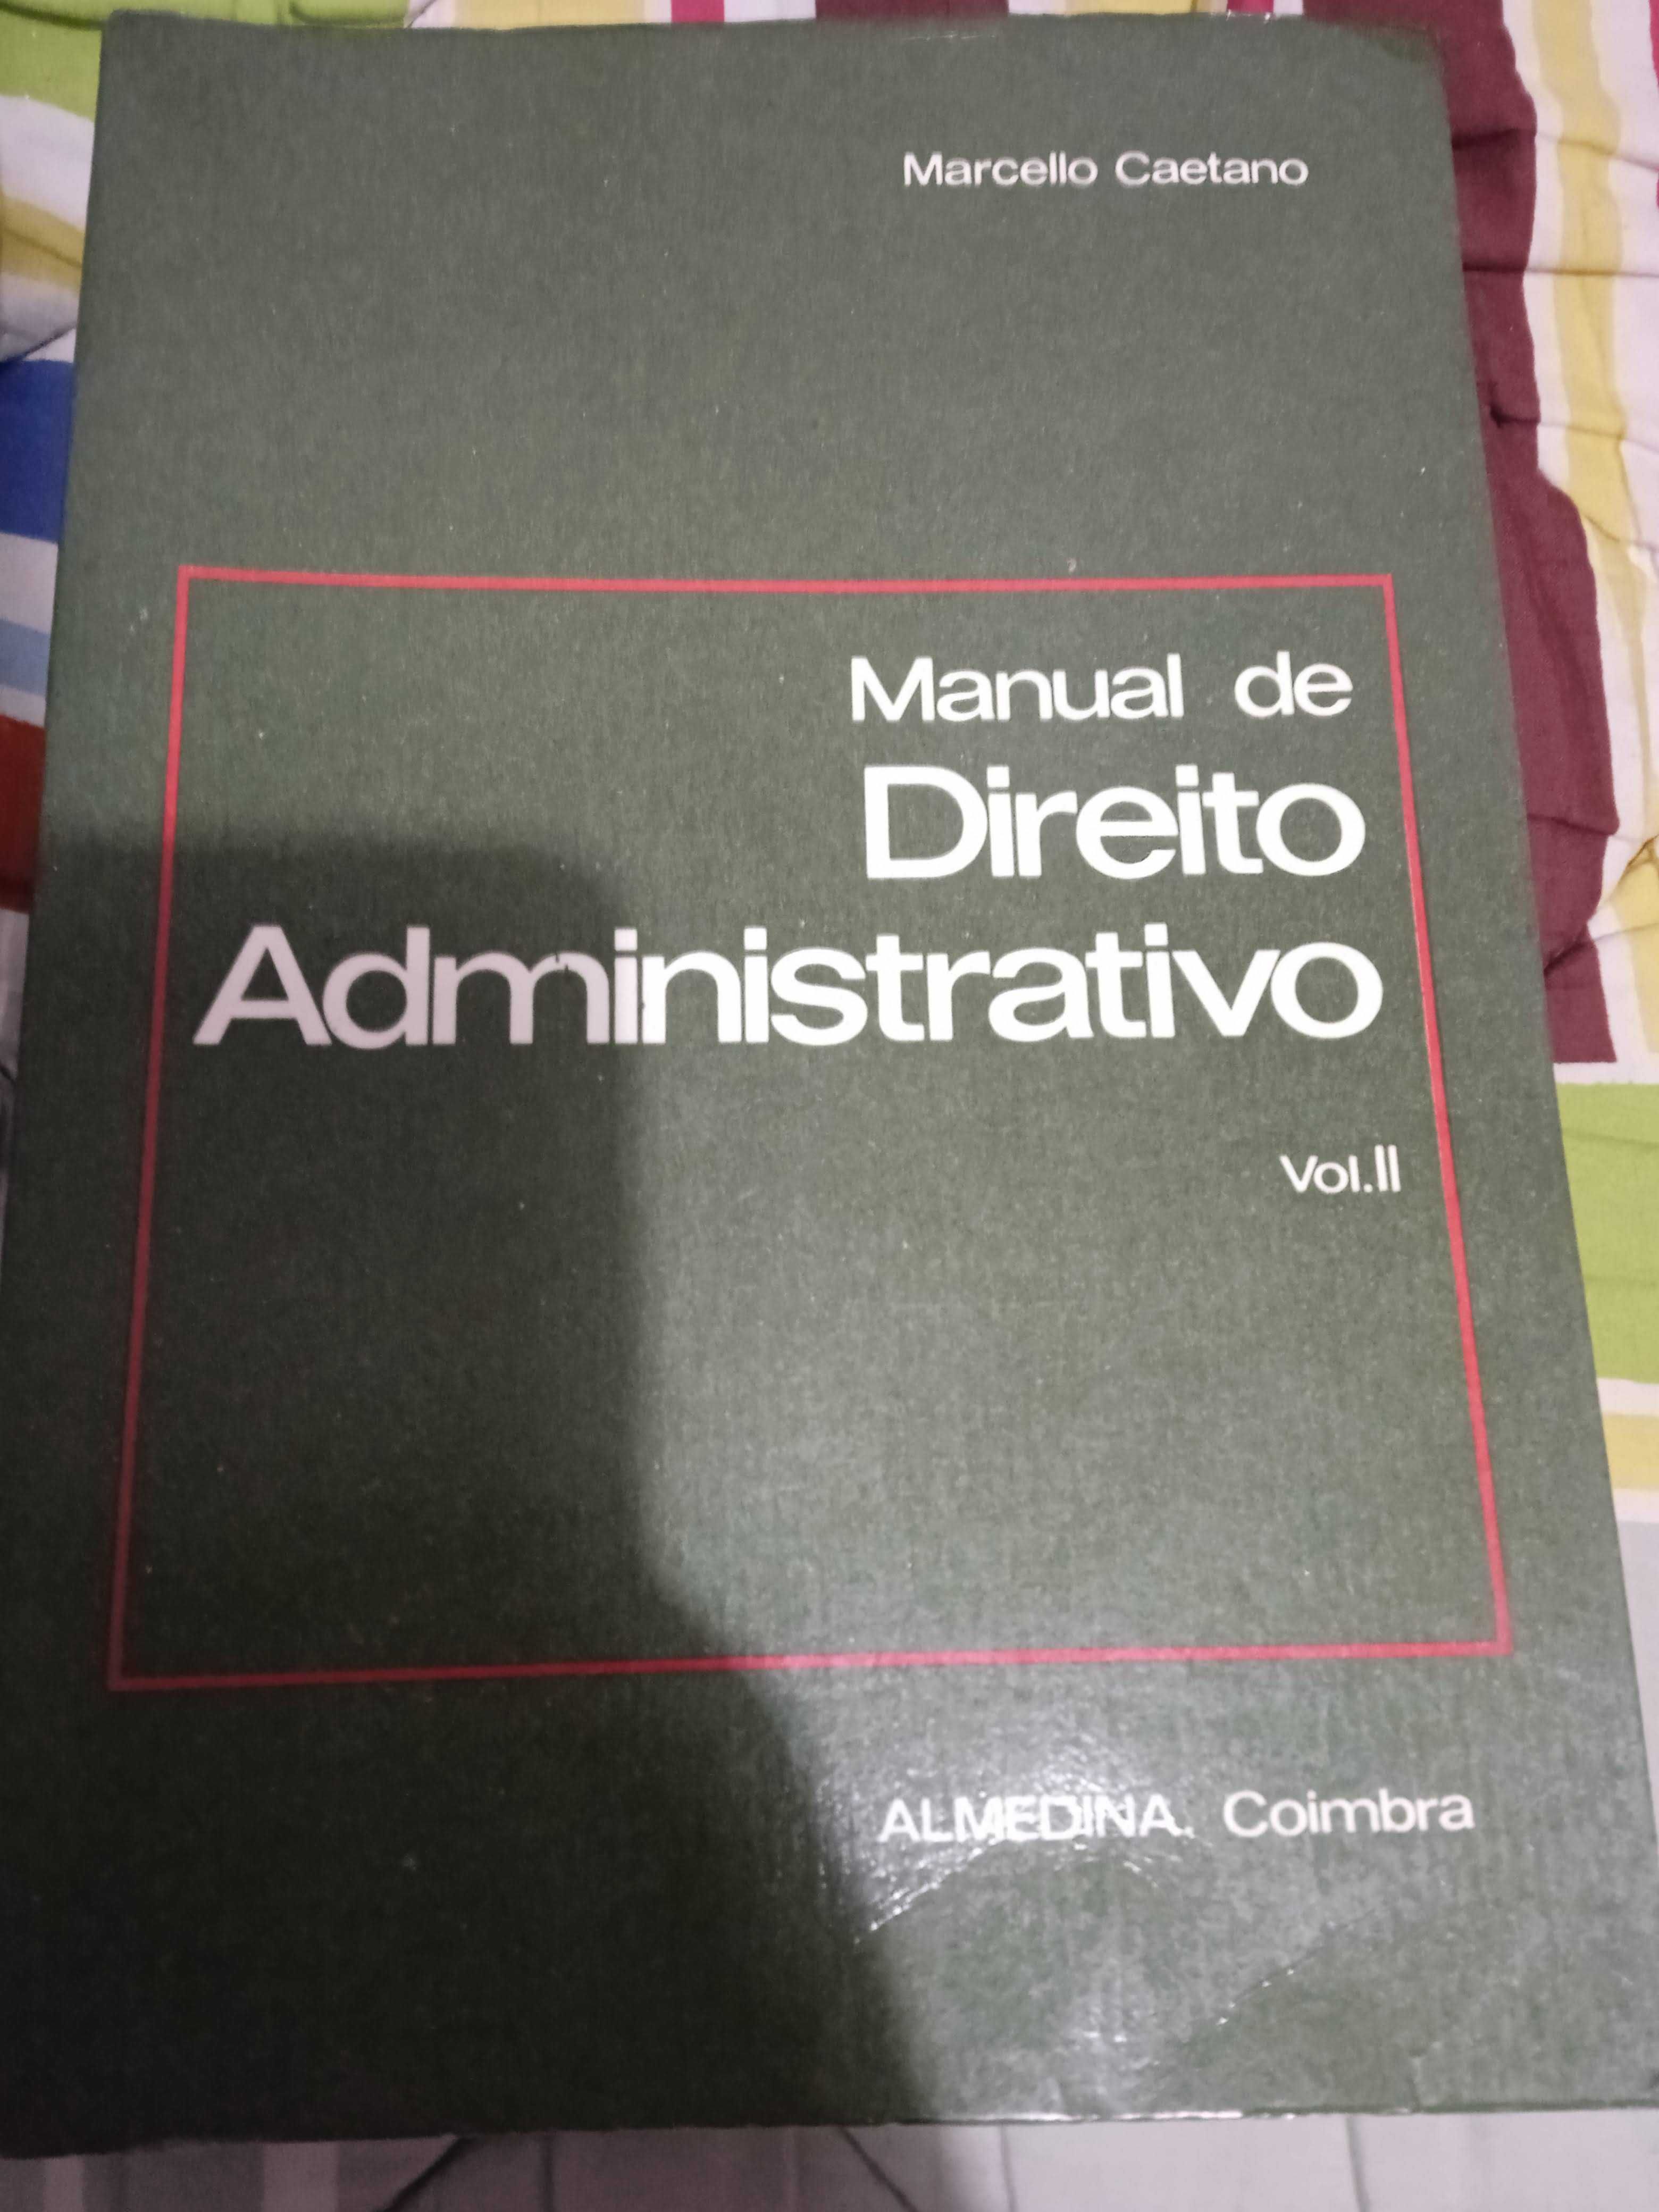 Manual de Direito Administrativo - Vol. II - Marcello Caetano